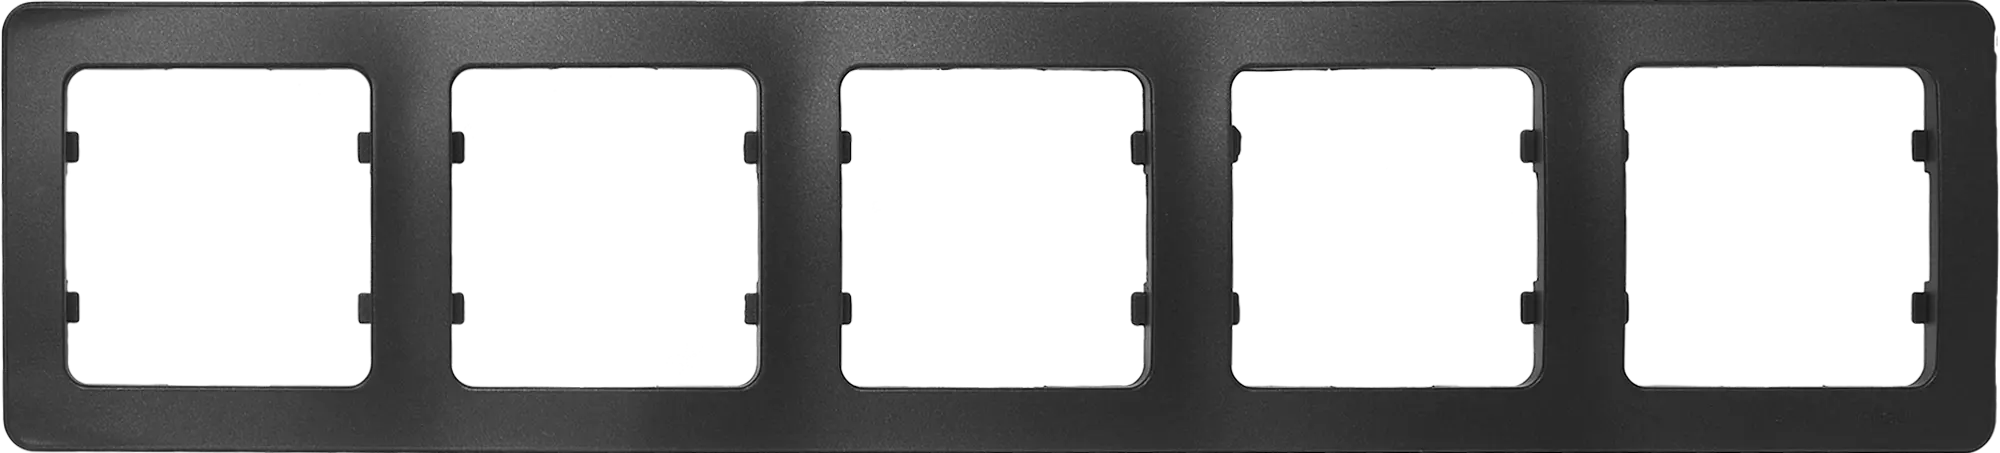 Рамка Hegel Master 5 M 36.2x8.1 см пластик цвет черный